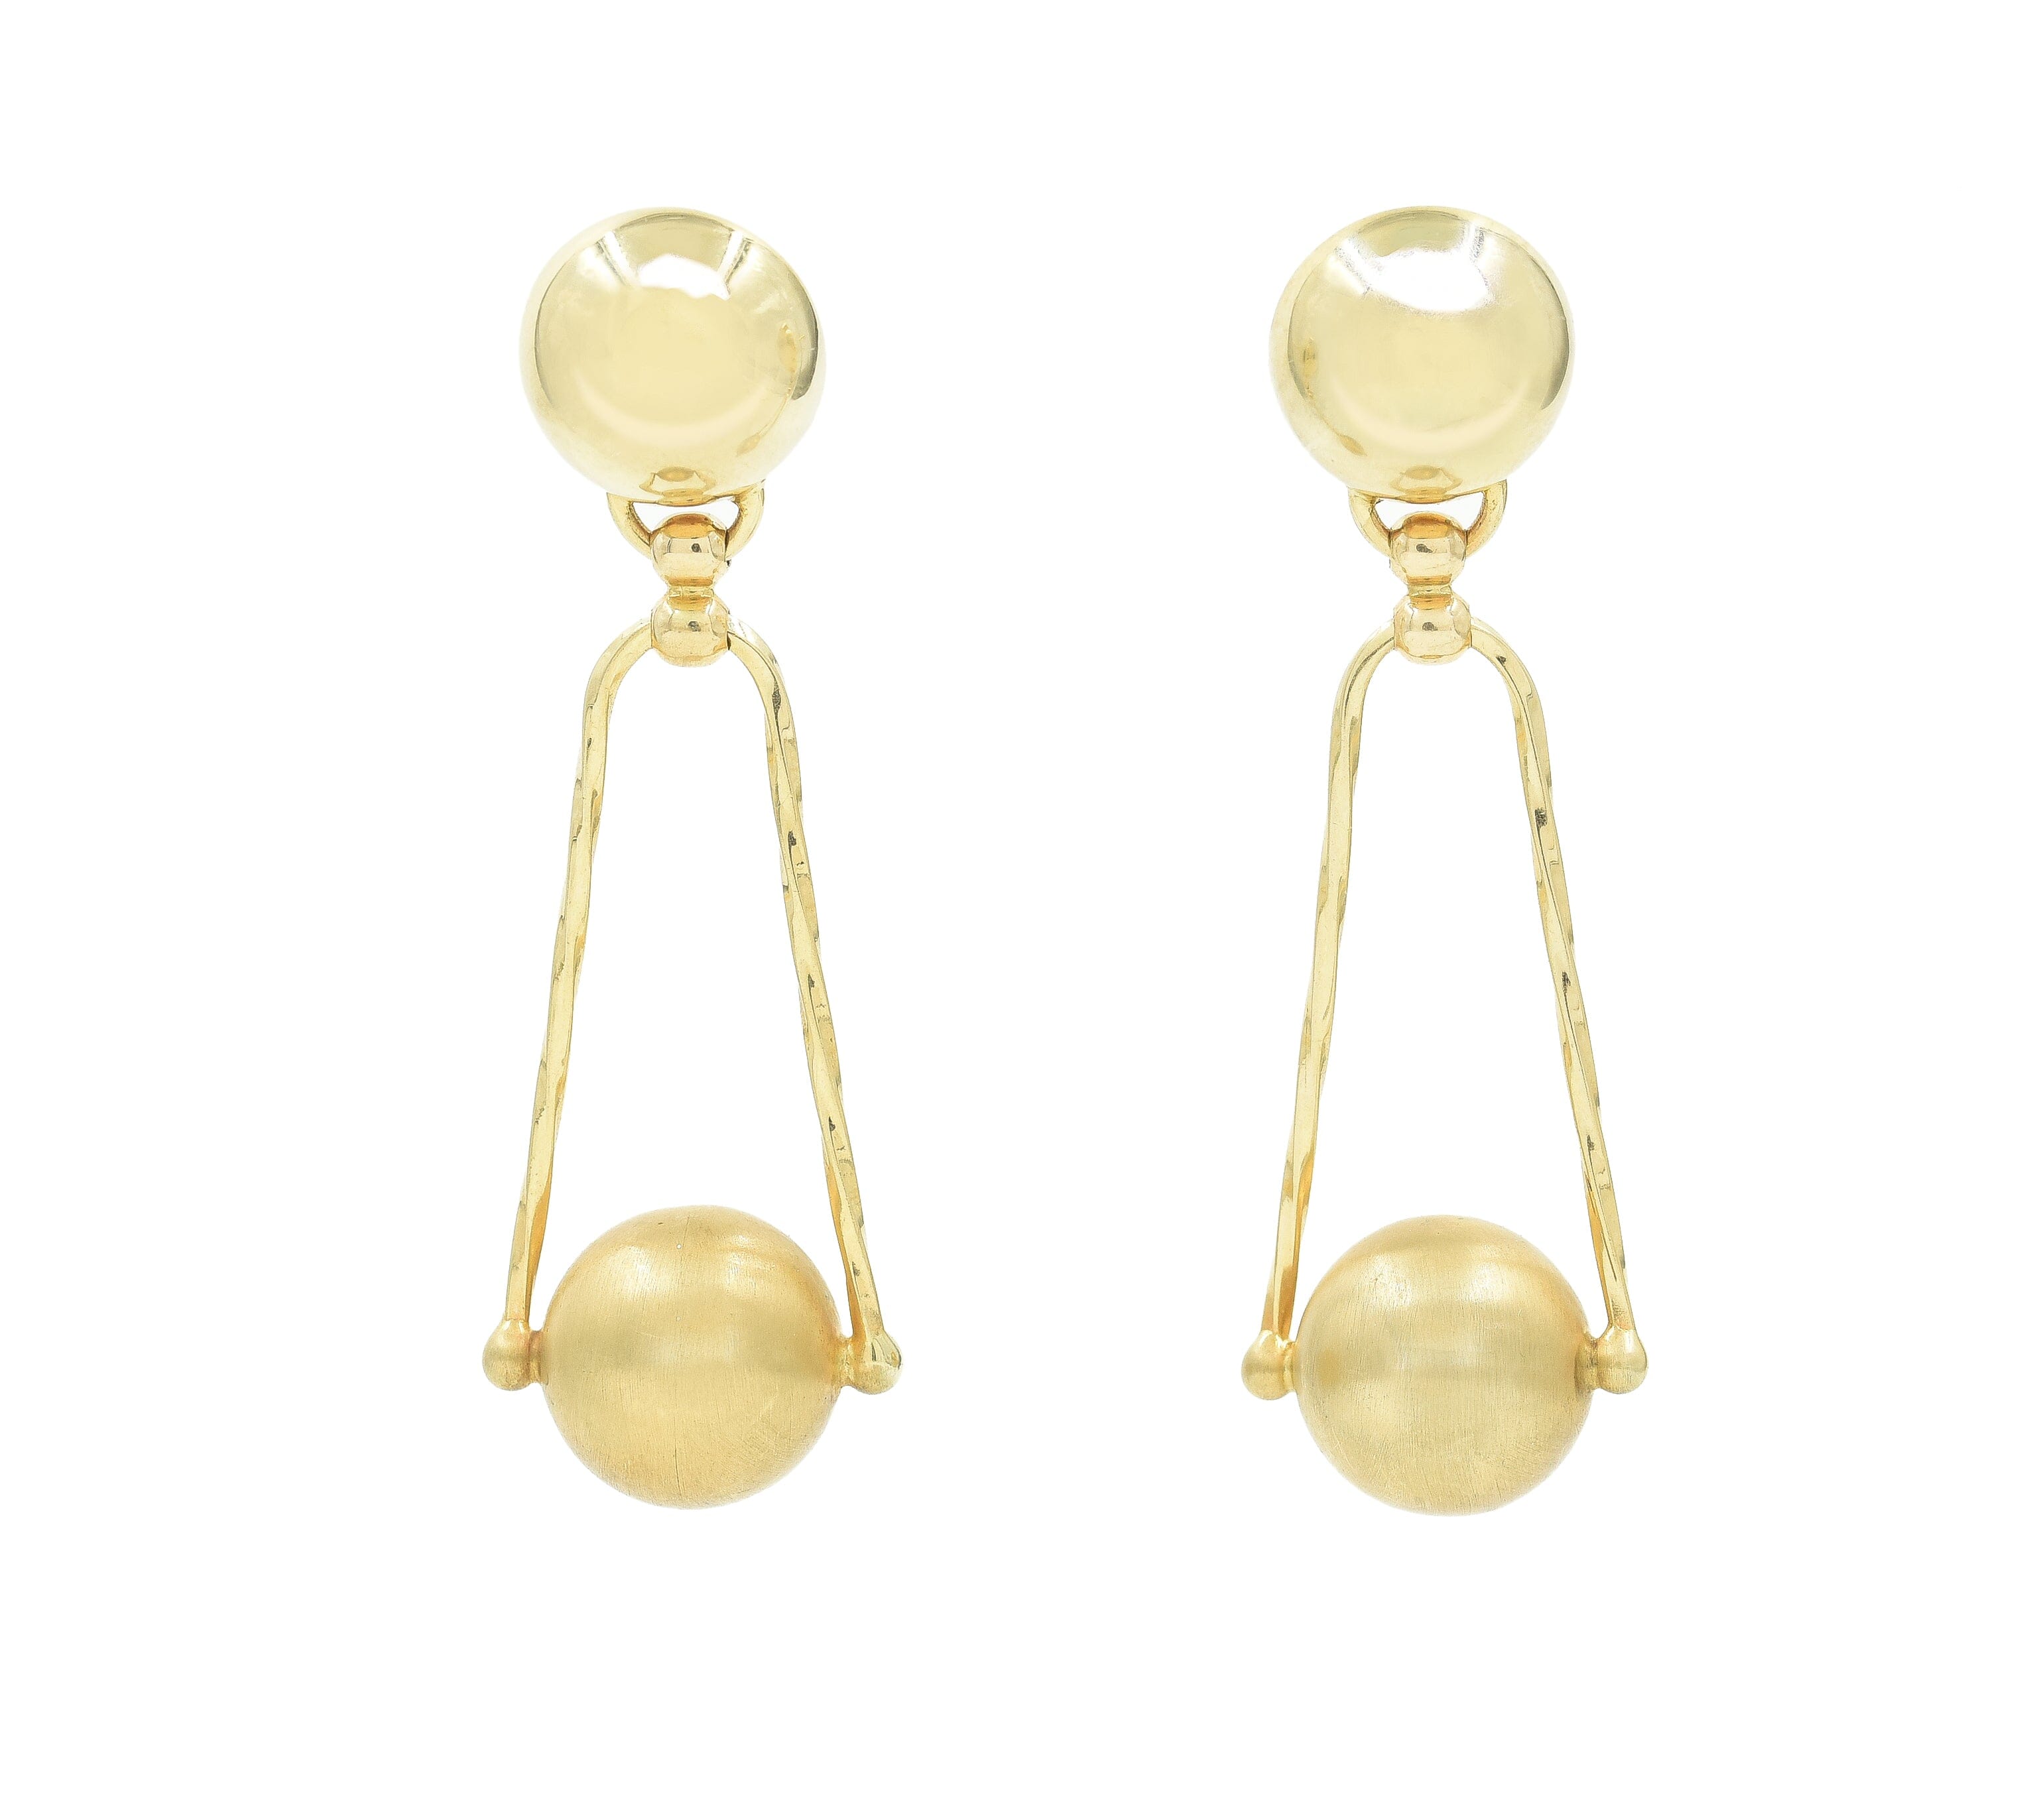 Vintage Gold Ball Drop Earrings Earrings - BONDEYE JEWELRY ®